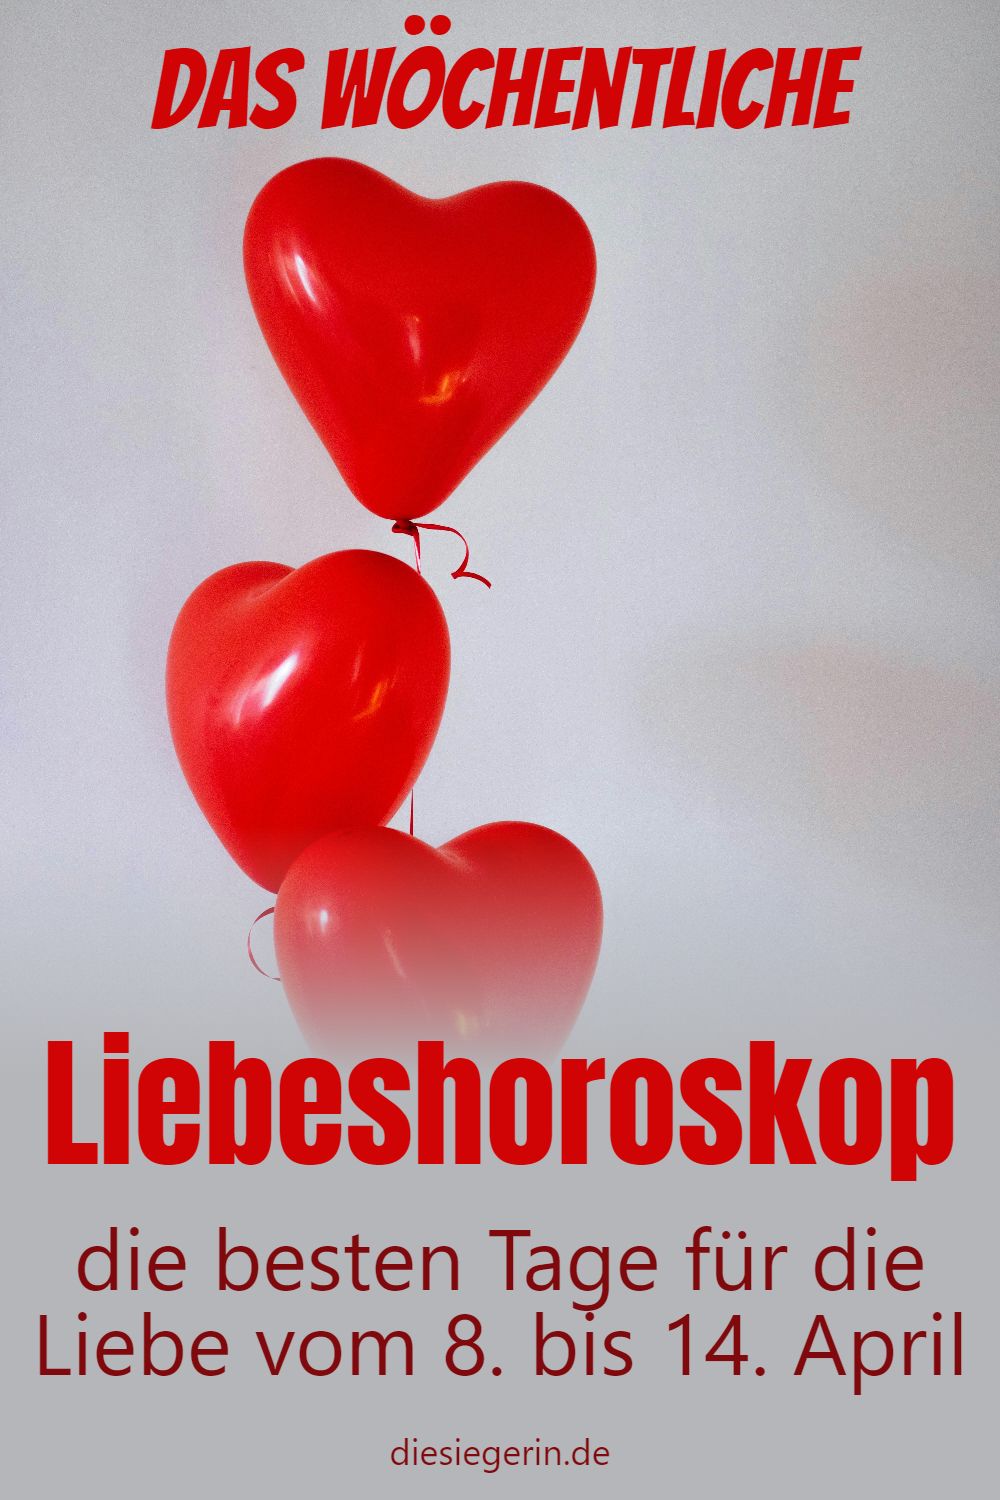 Das wöchentliche Liebeshoroskop die besten Tage für die Liebe vom 8. bis 14. April